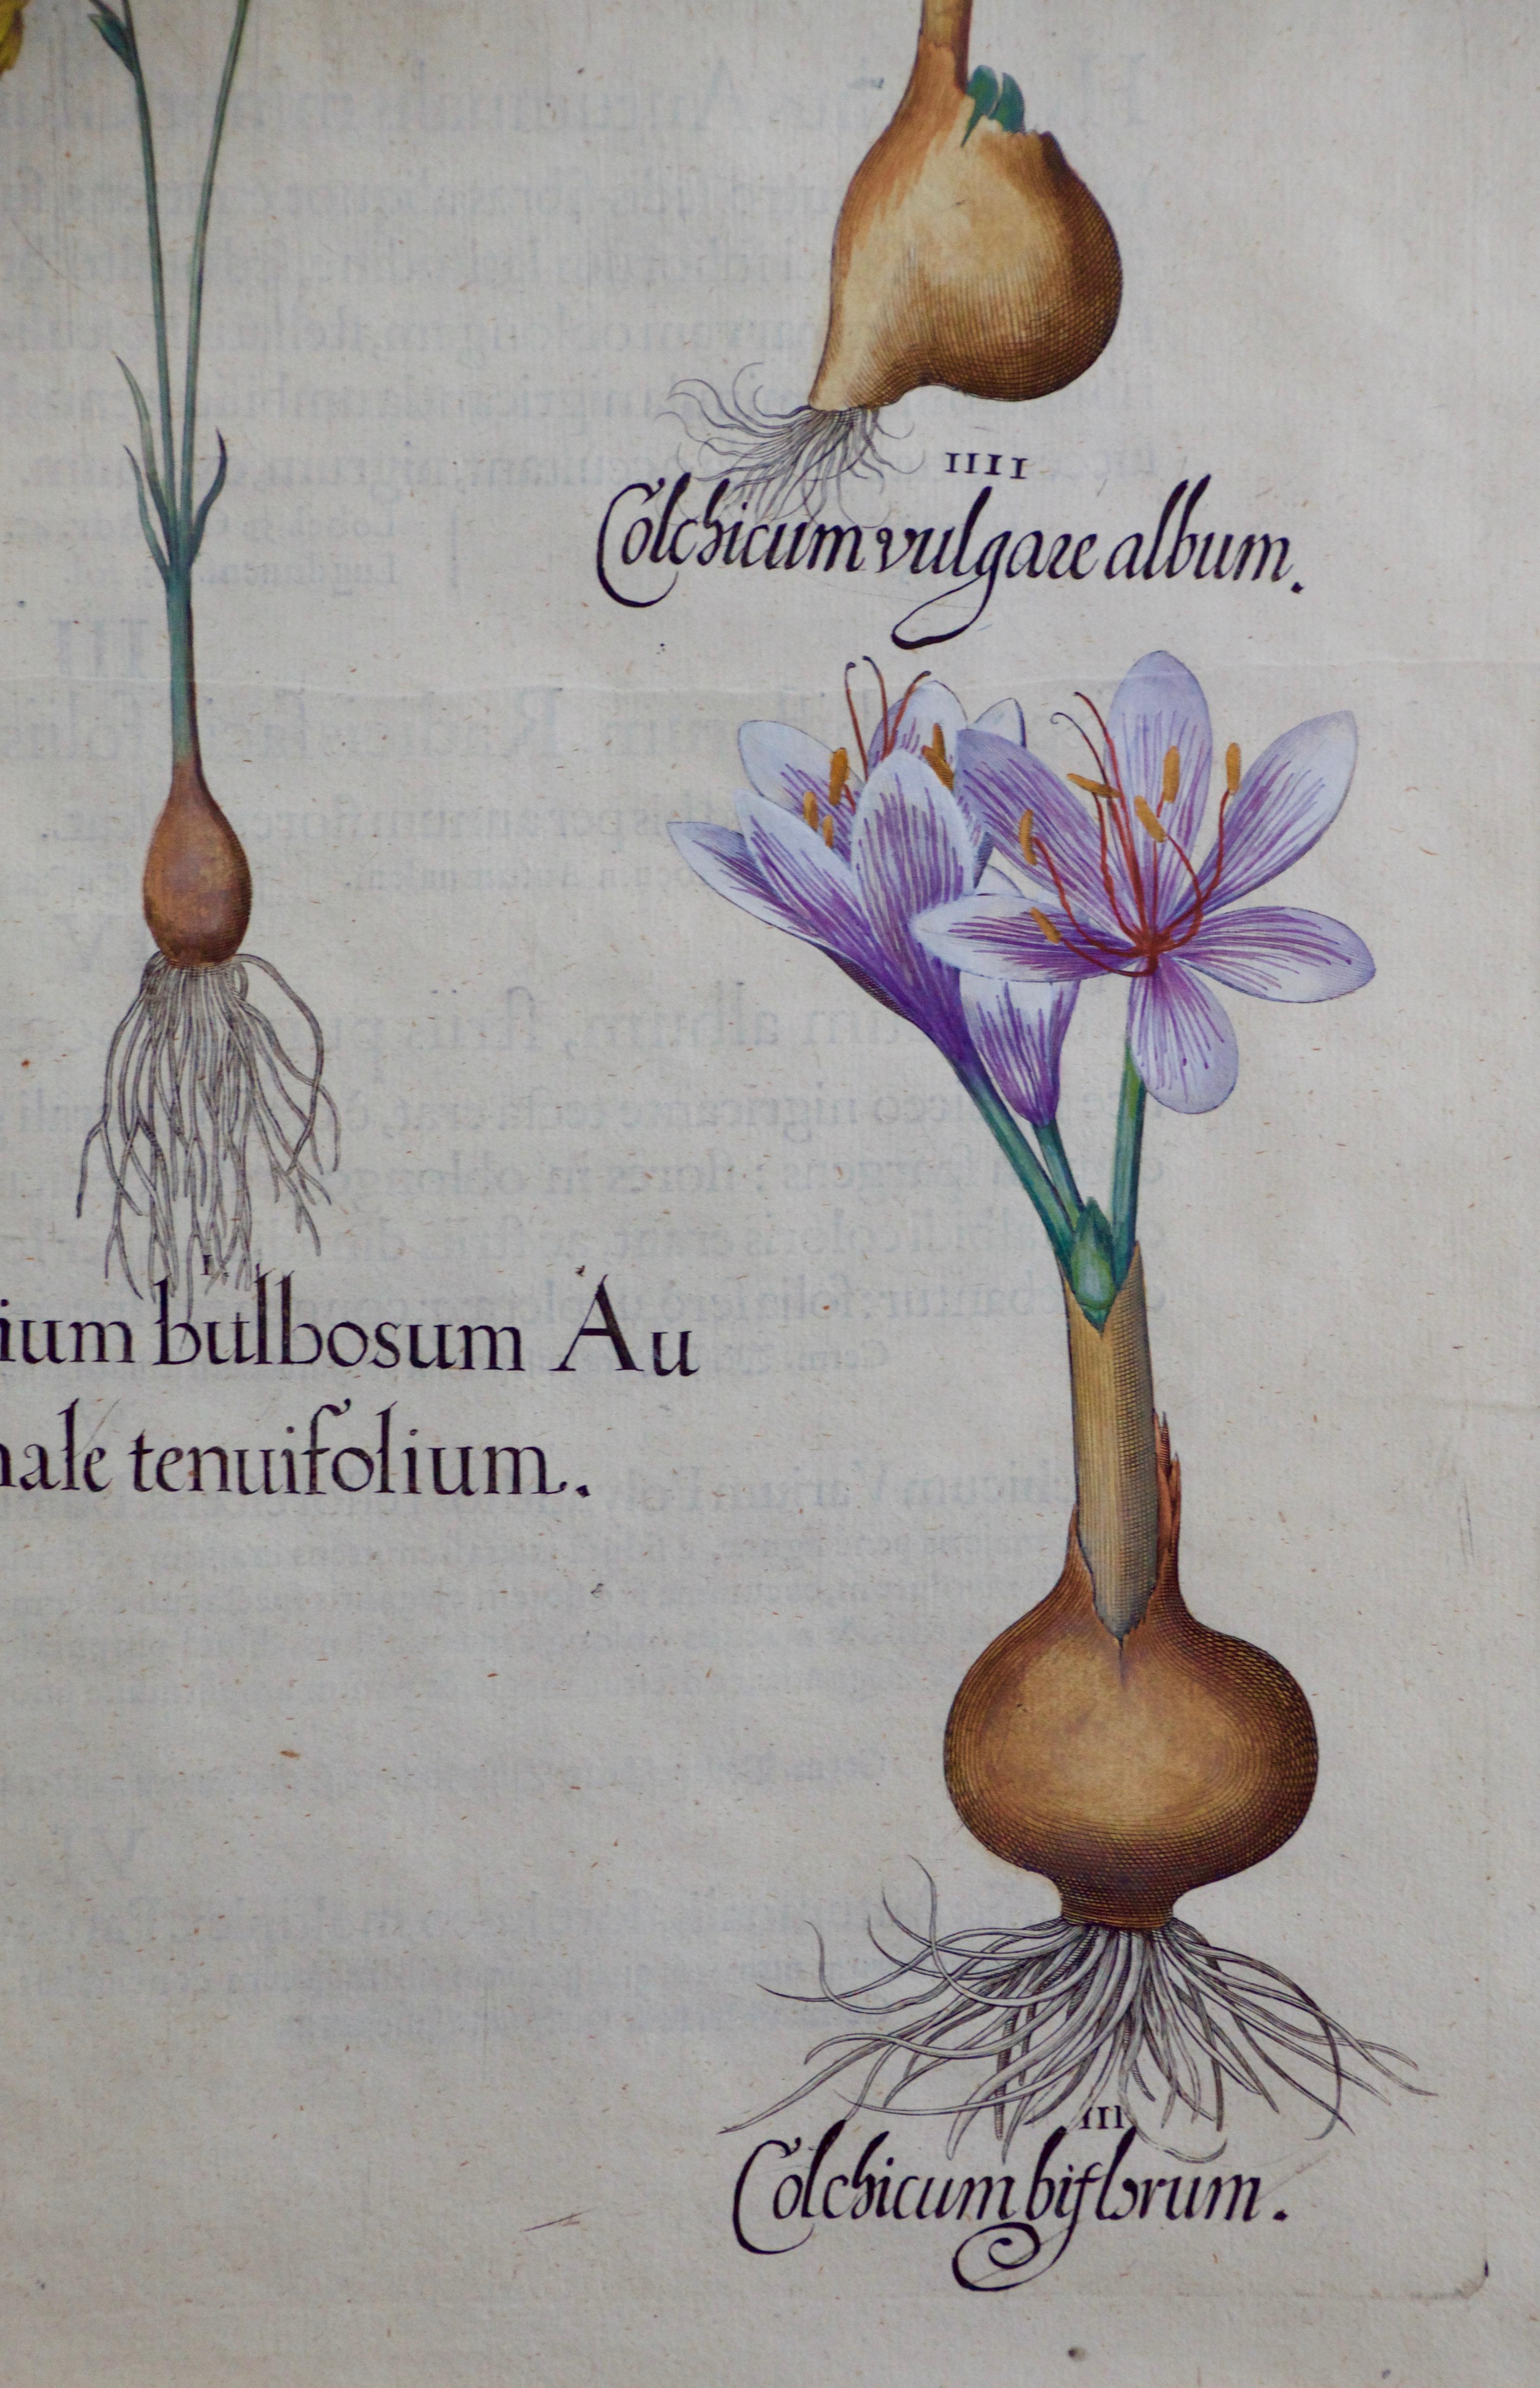 Besler Herbst Schneeflocke und Meadow Saffronblüten: 17. Jahrhundert Botanische Gravur – Print von Basilius Besler